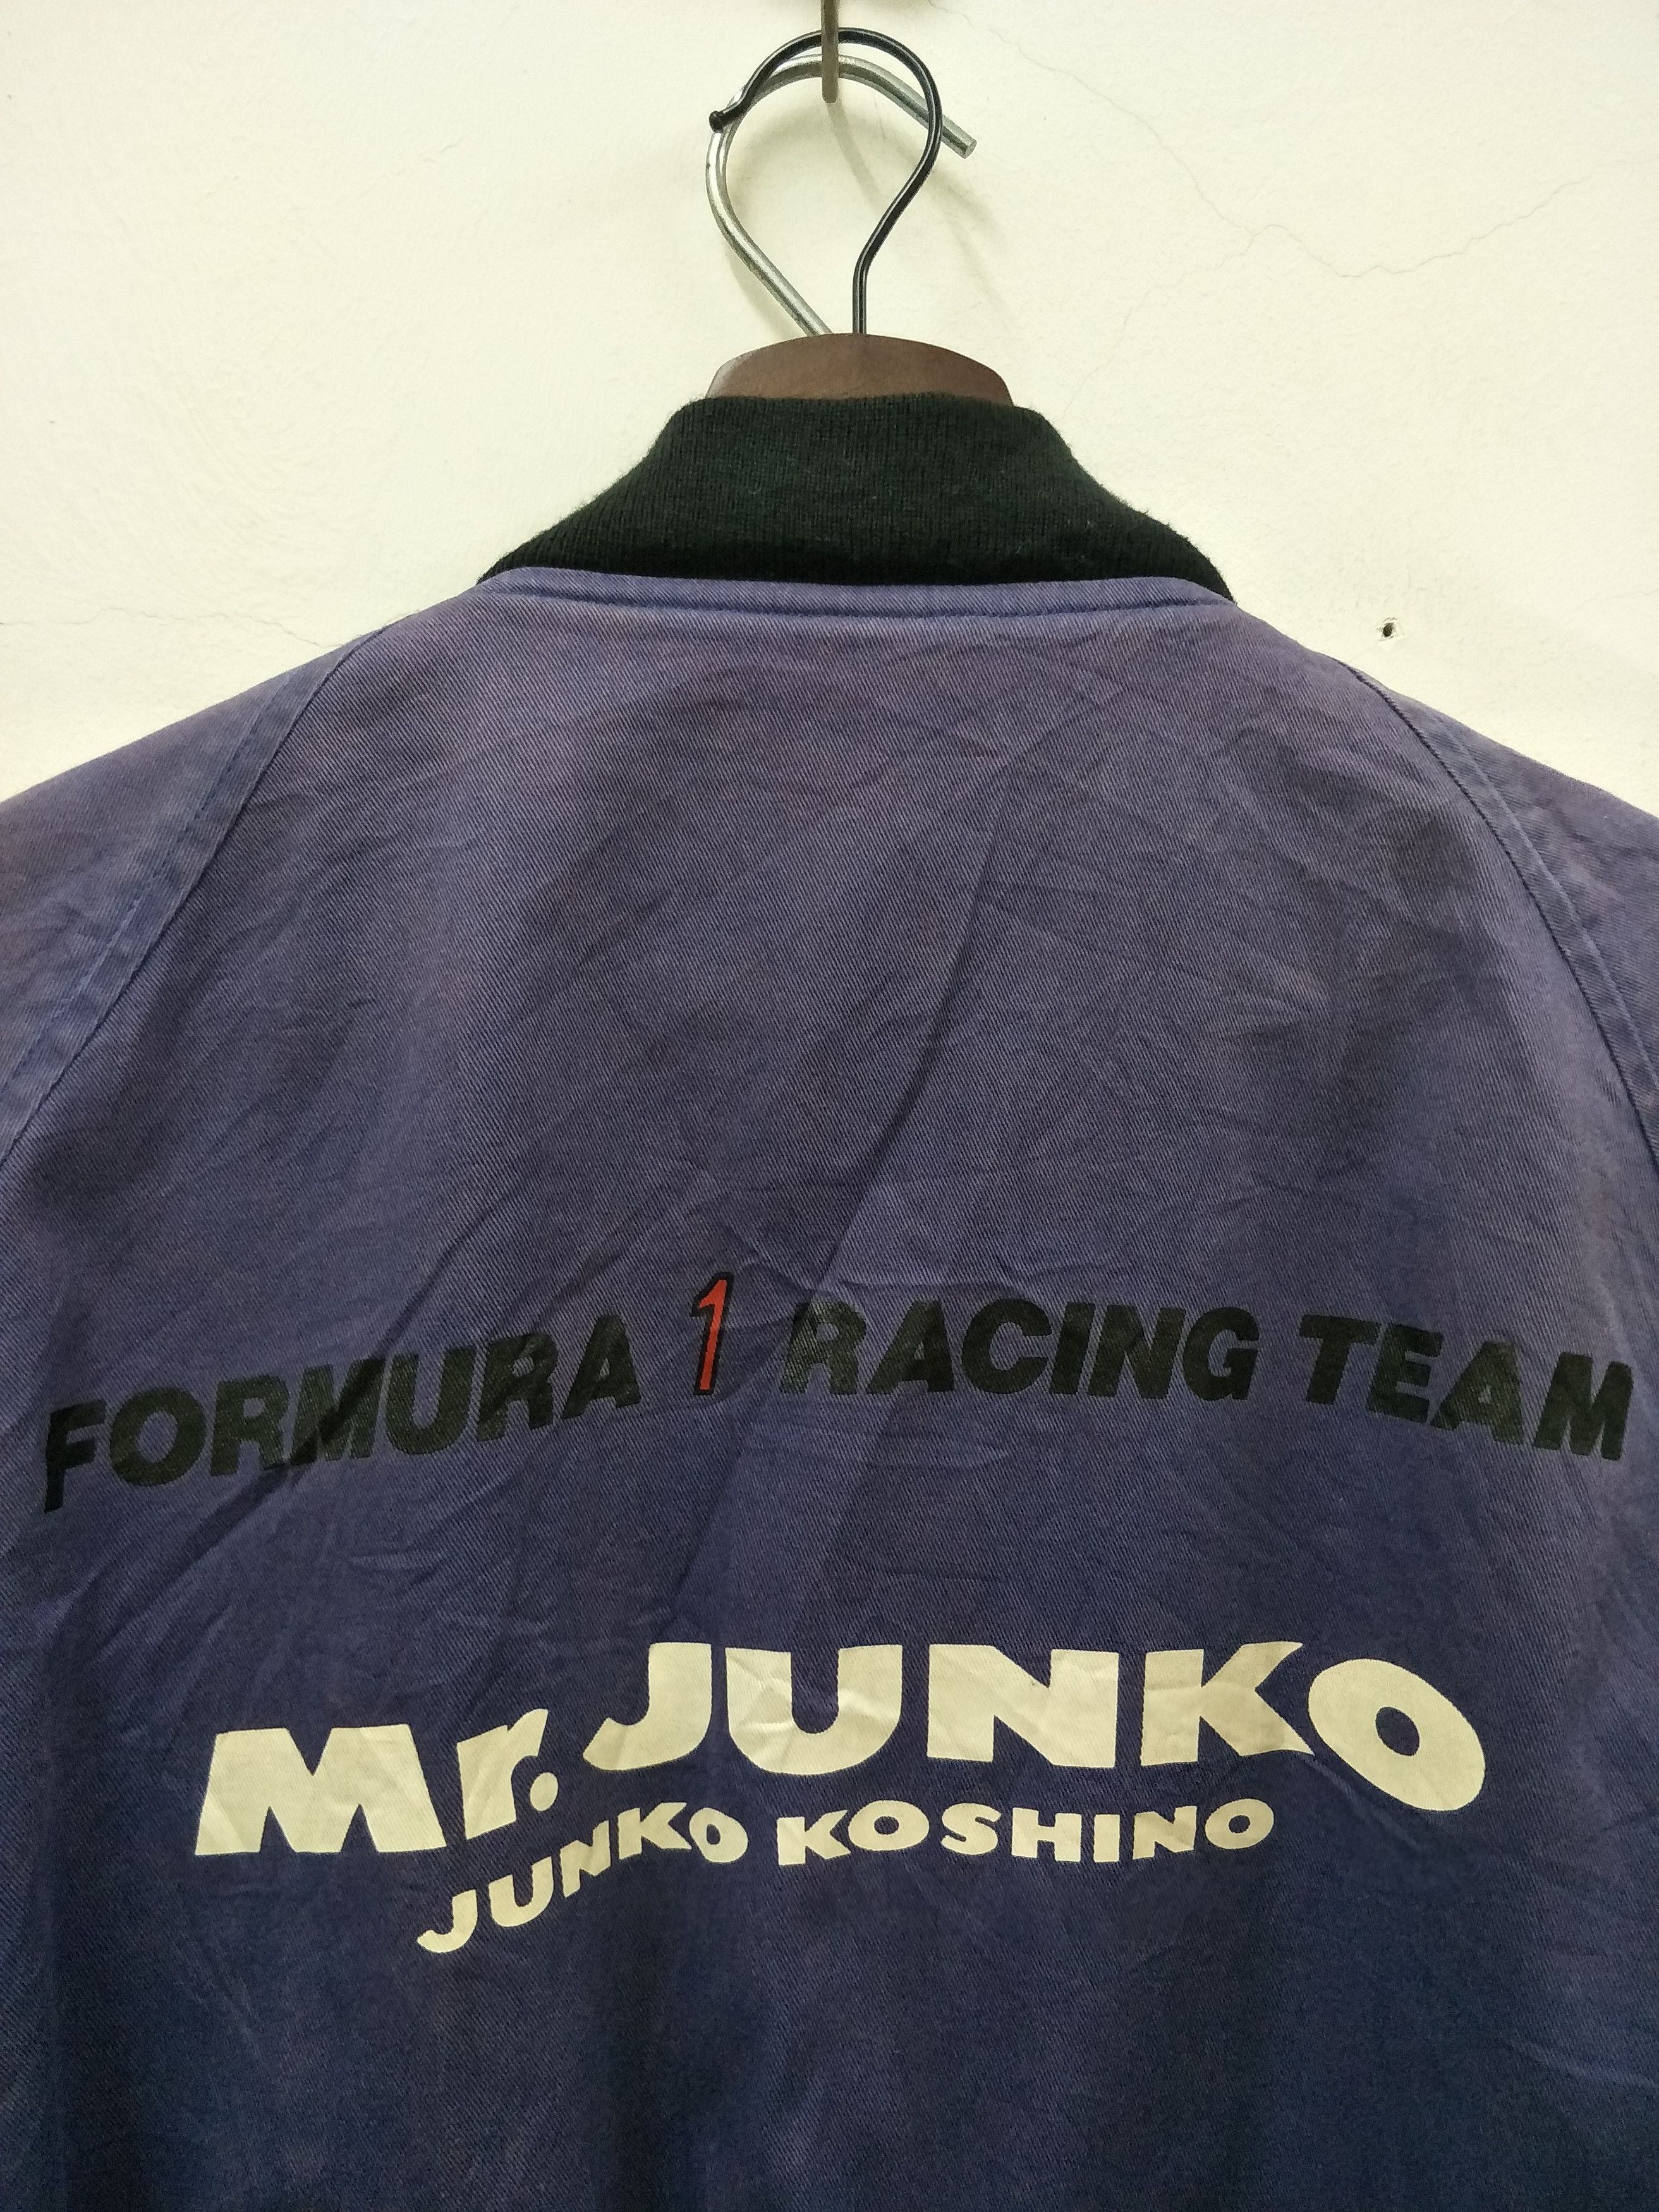 Vintage Mr Junko Junko Koshino Racing Team - 3